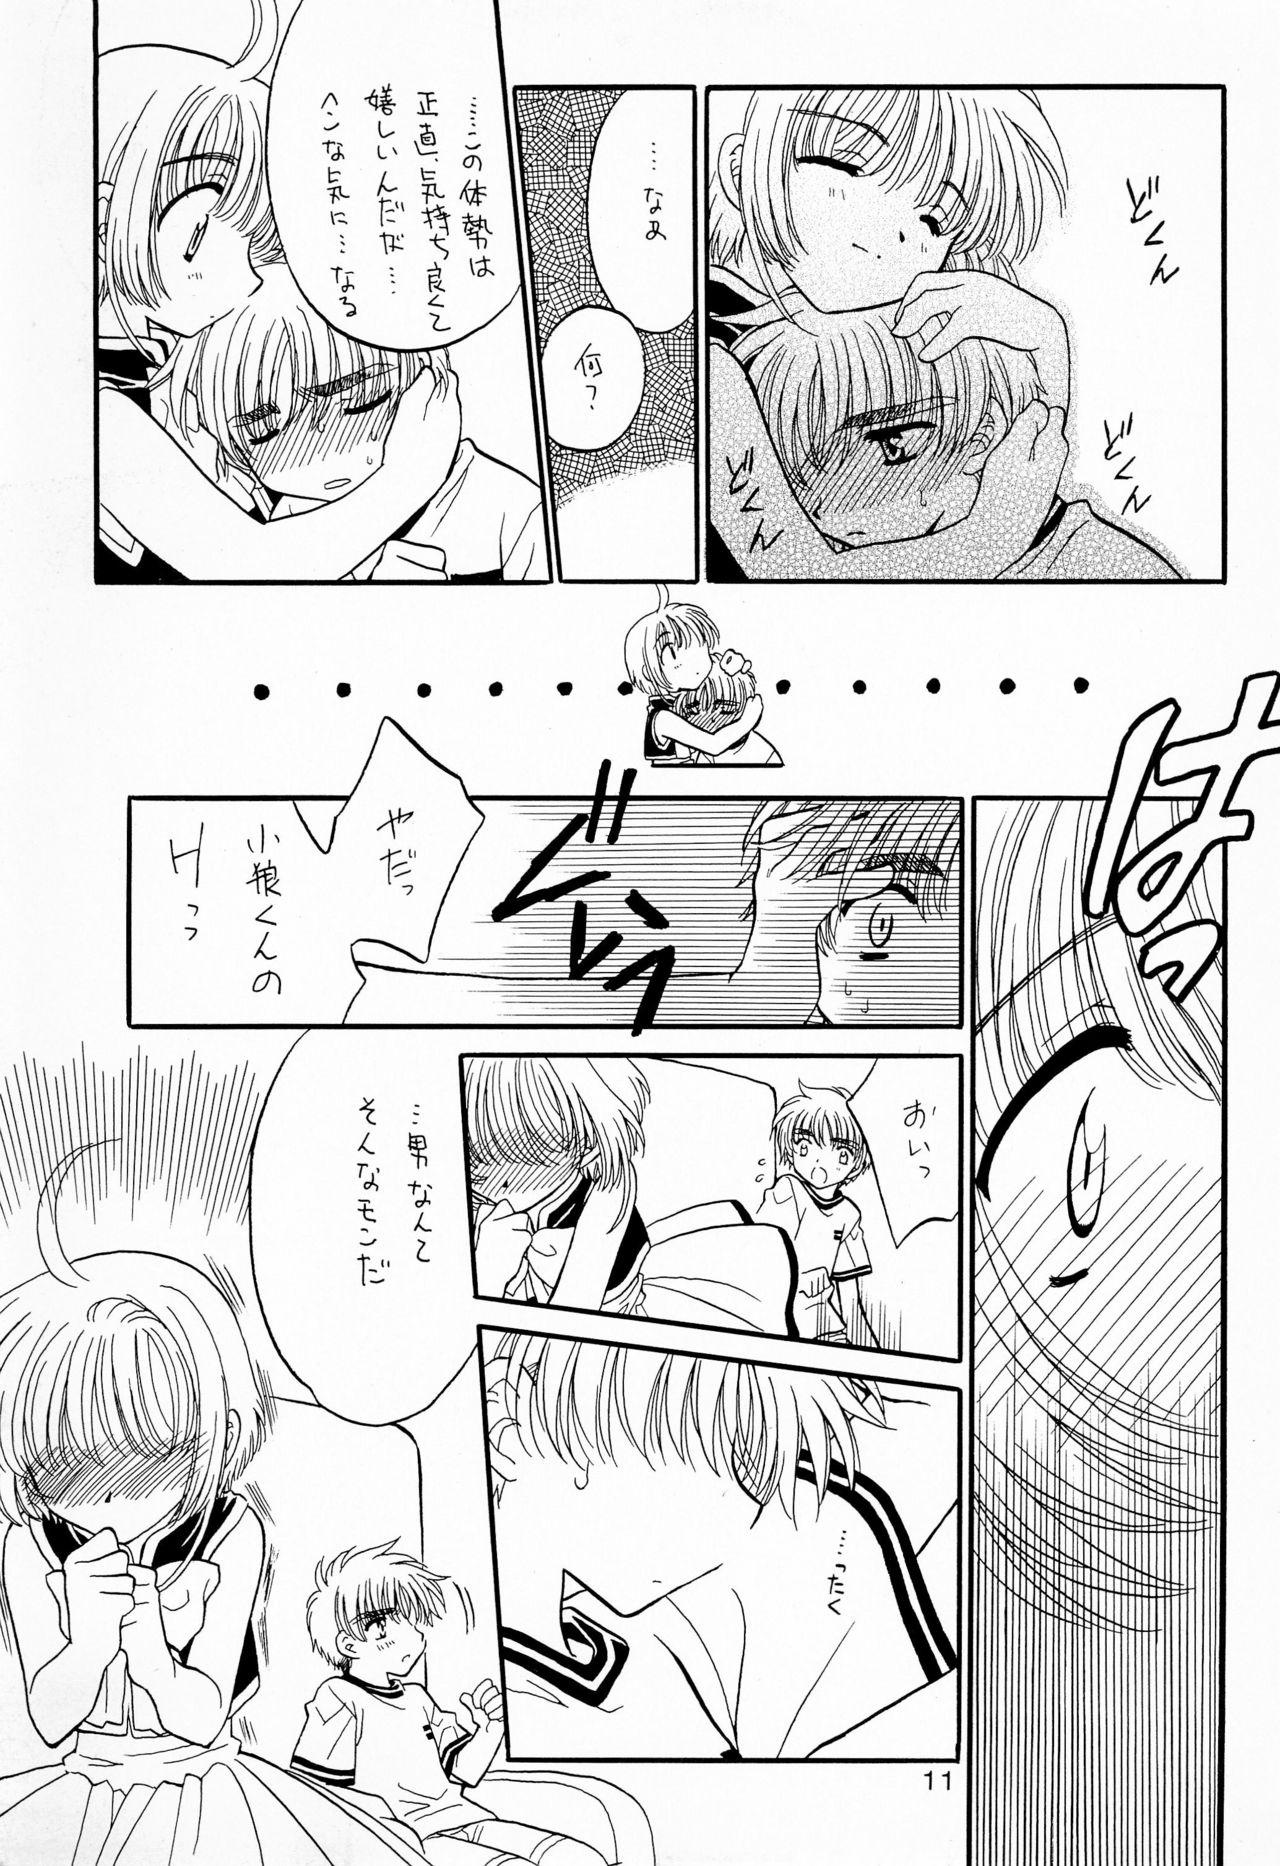 Bald Pussy Precaire - Cardcaptor sakura Boy - Page 11